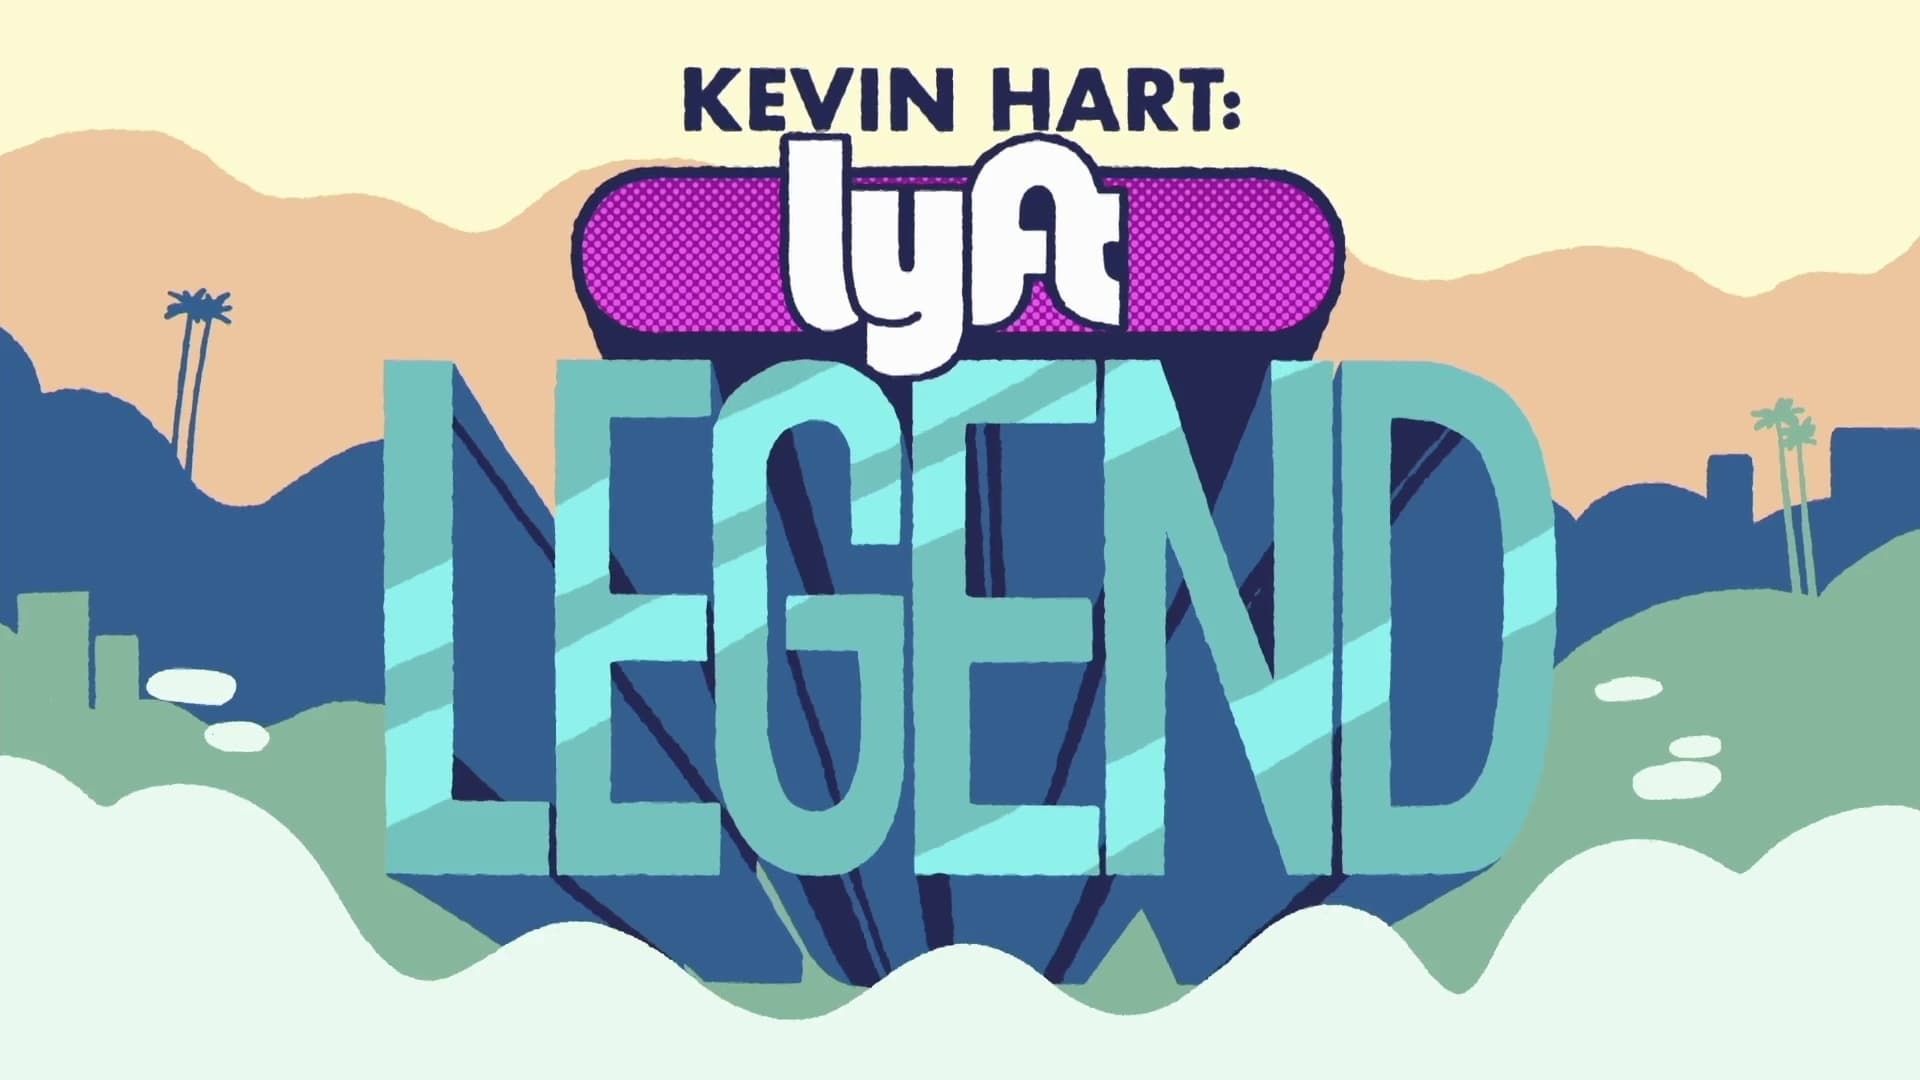 Kevin Hart Lyft Legend background